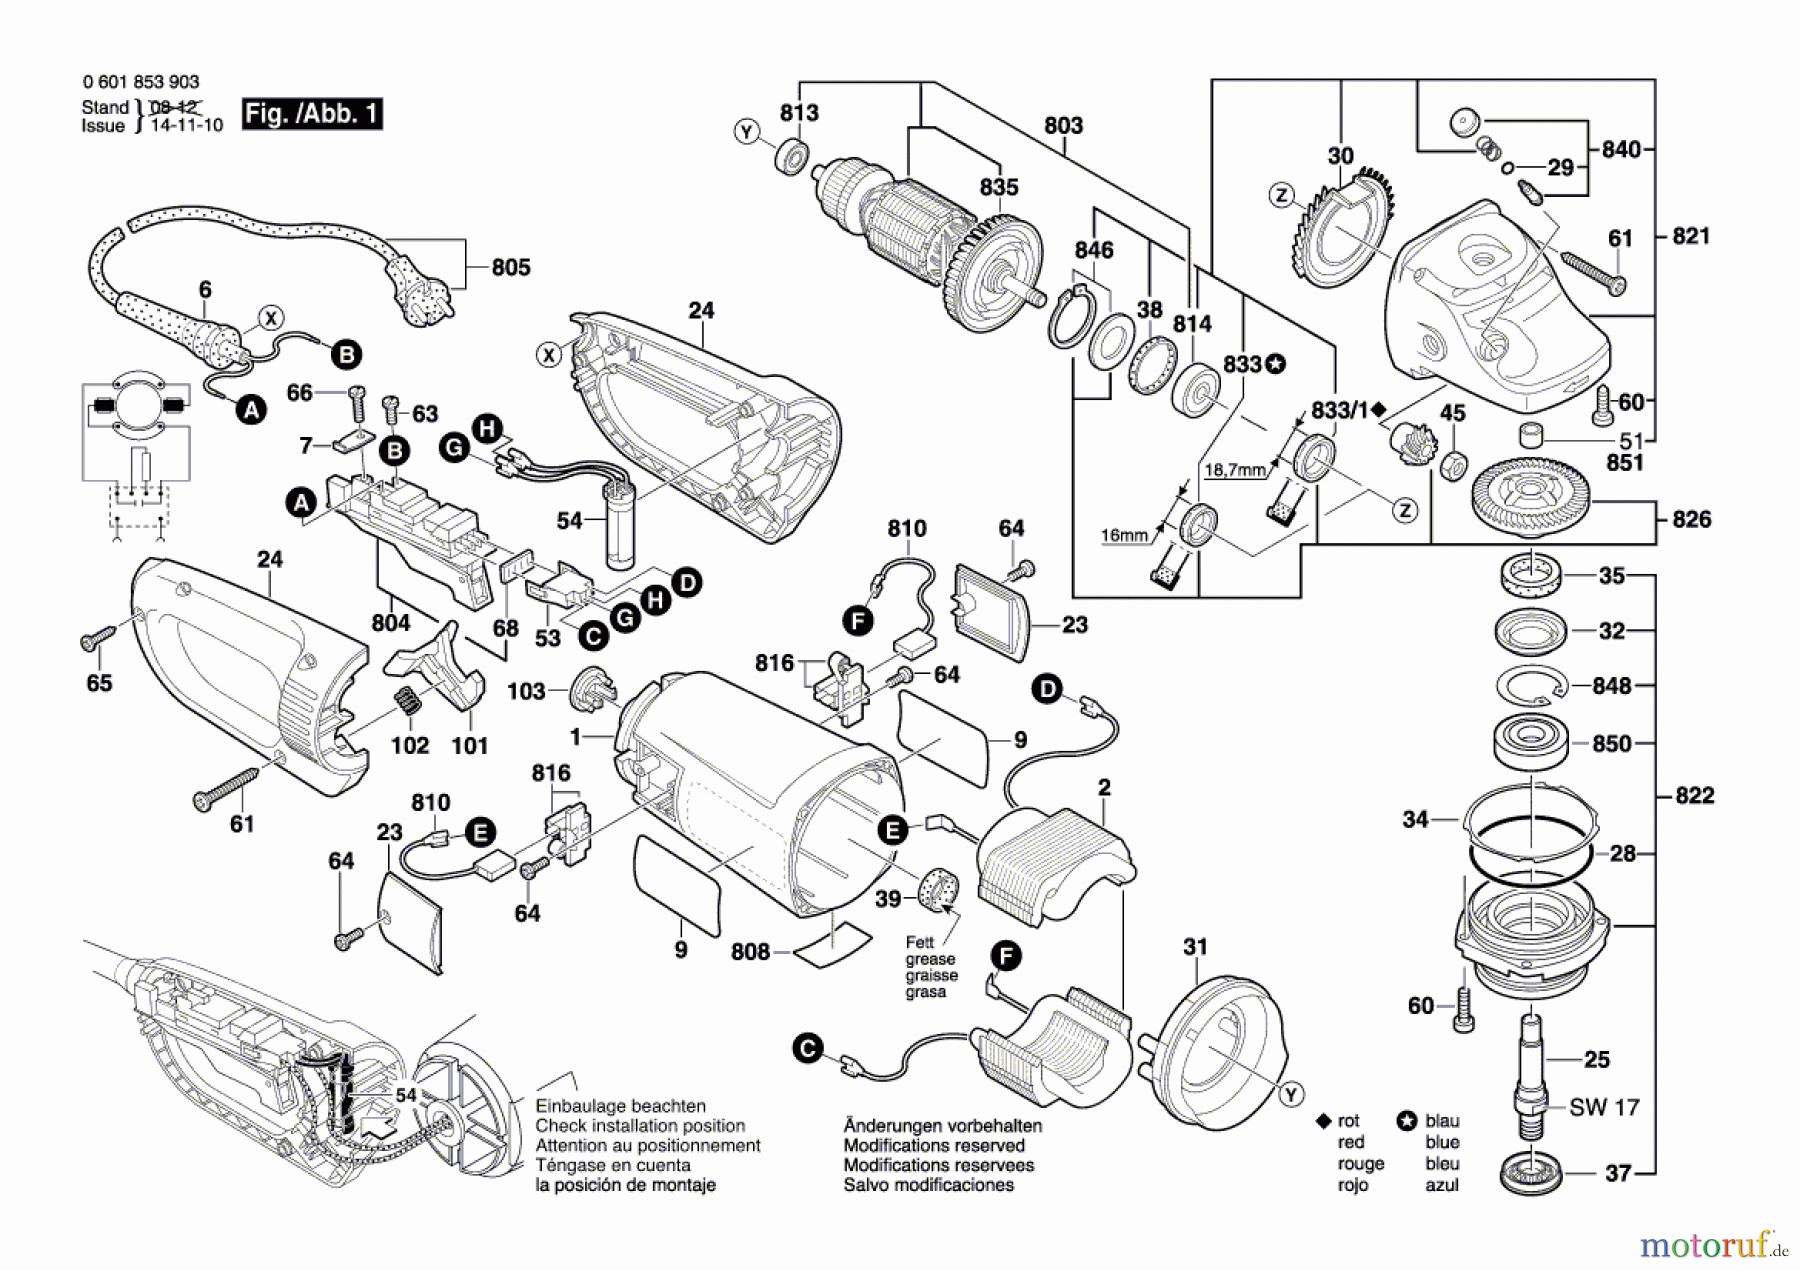  Bosch Werkzeug Winkelschleifer GWS 24-180 JB Seite 1